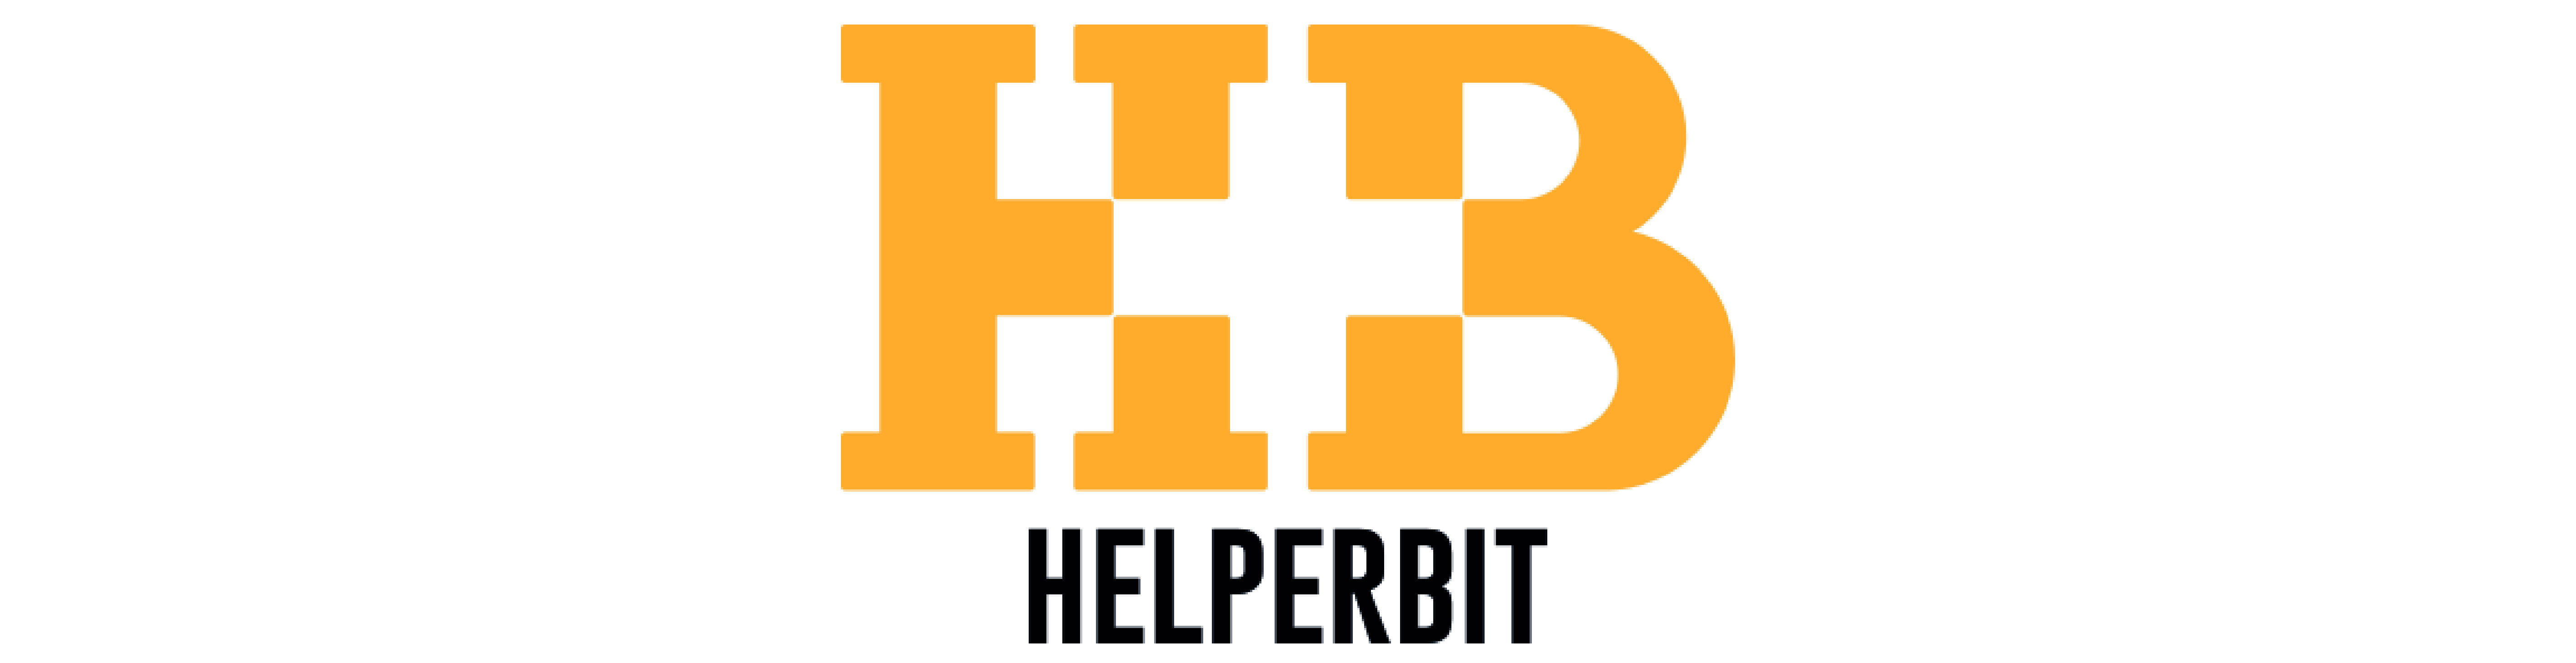 Helperbit is the Italian winner of Fintech category